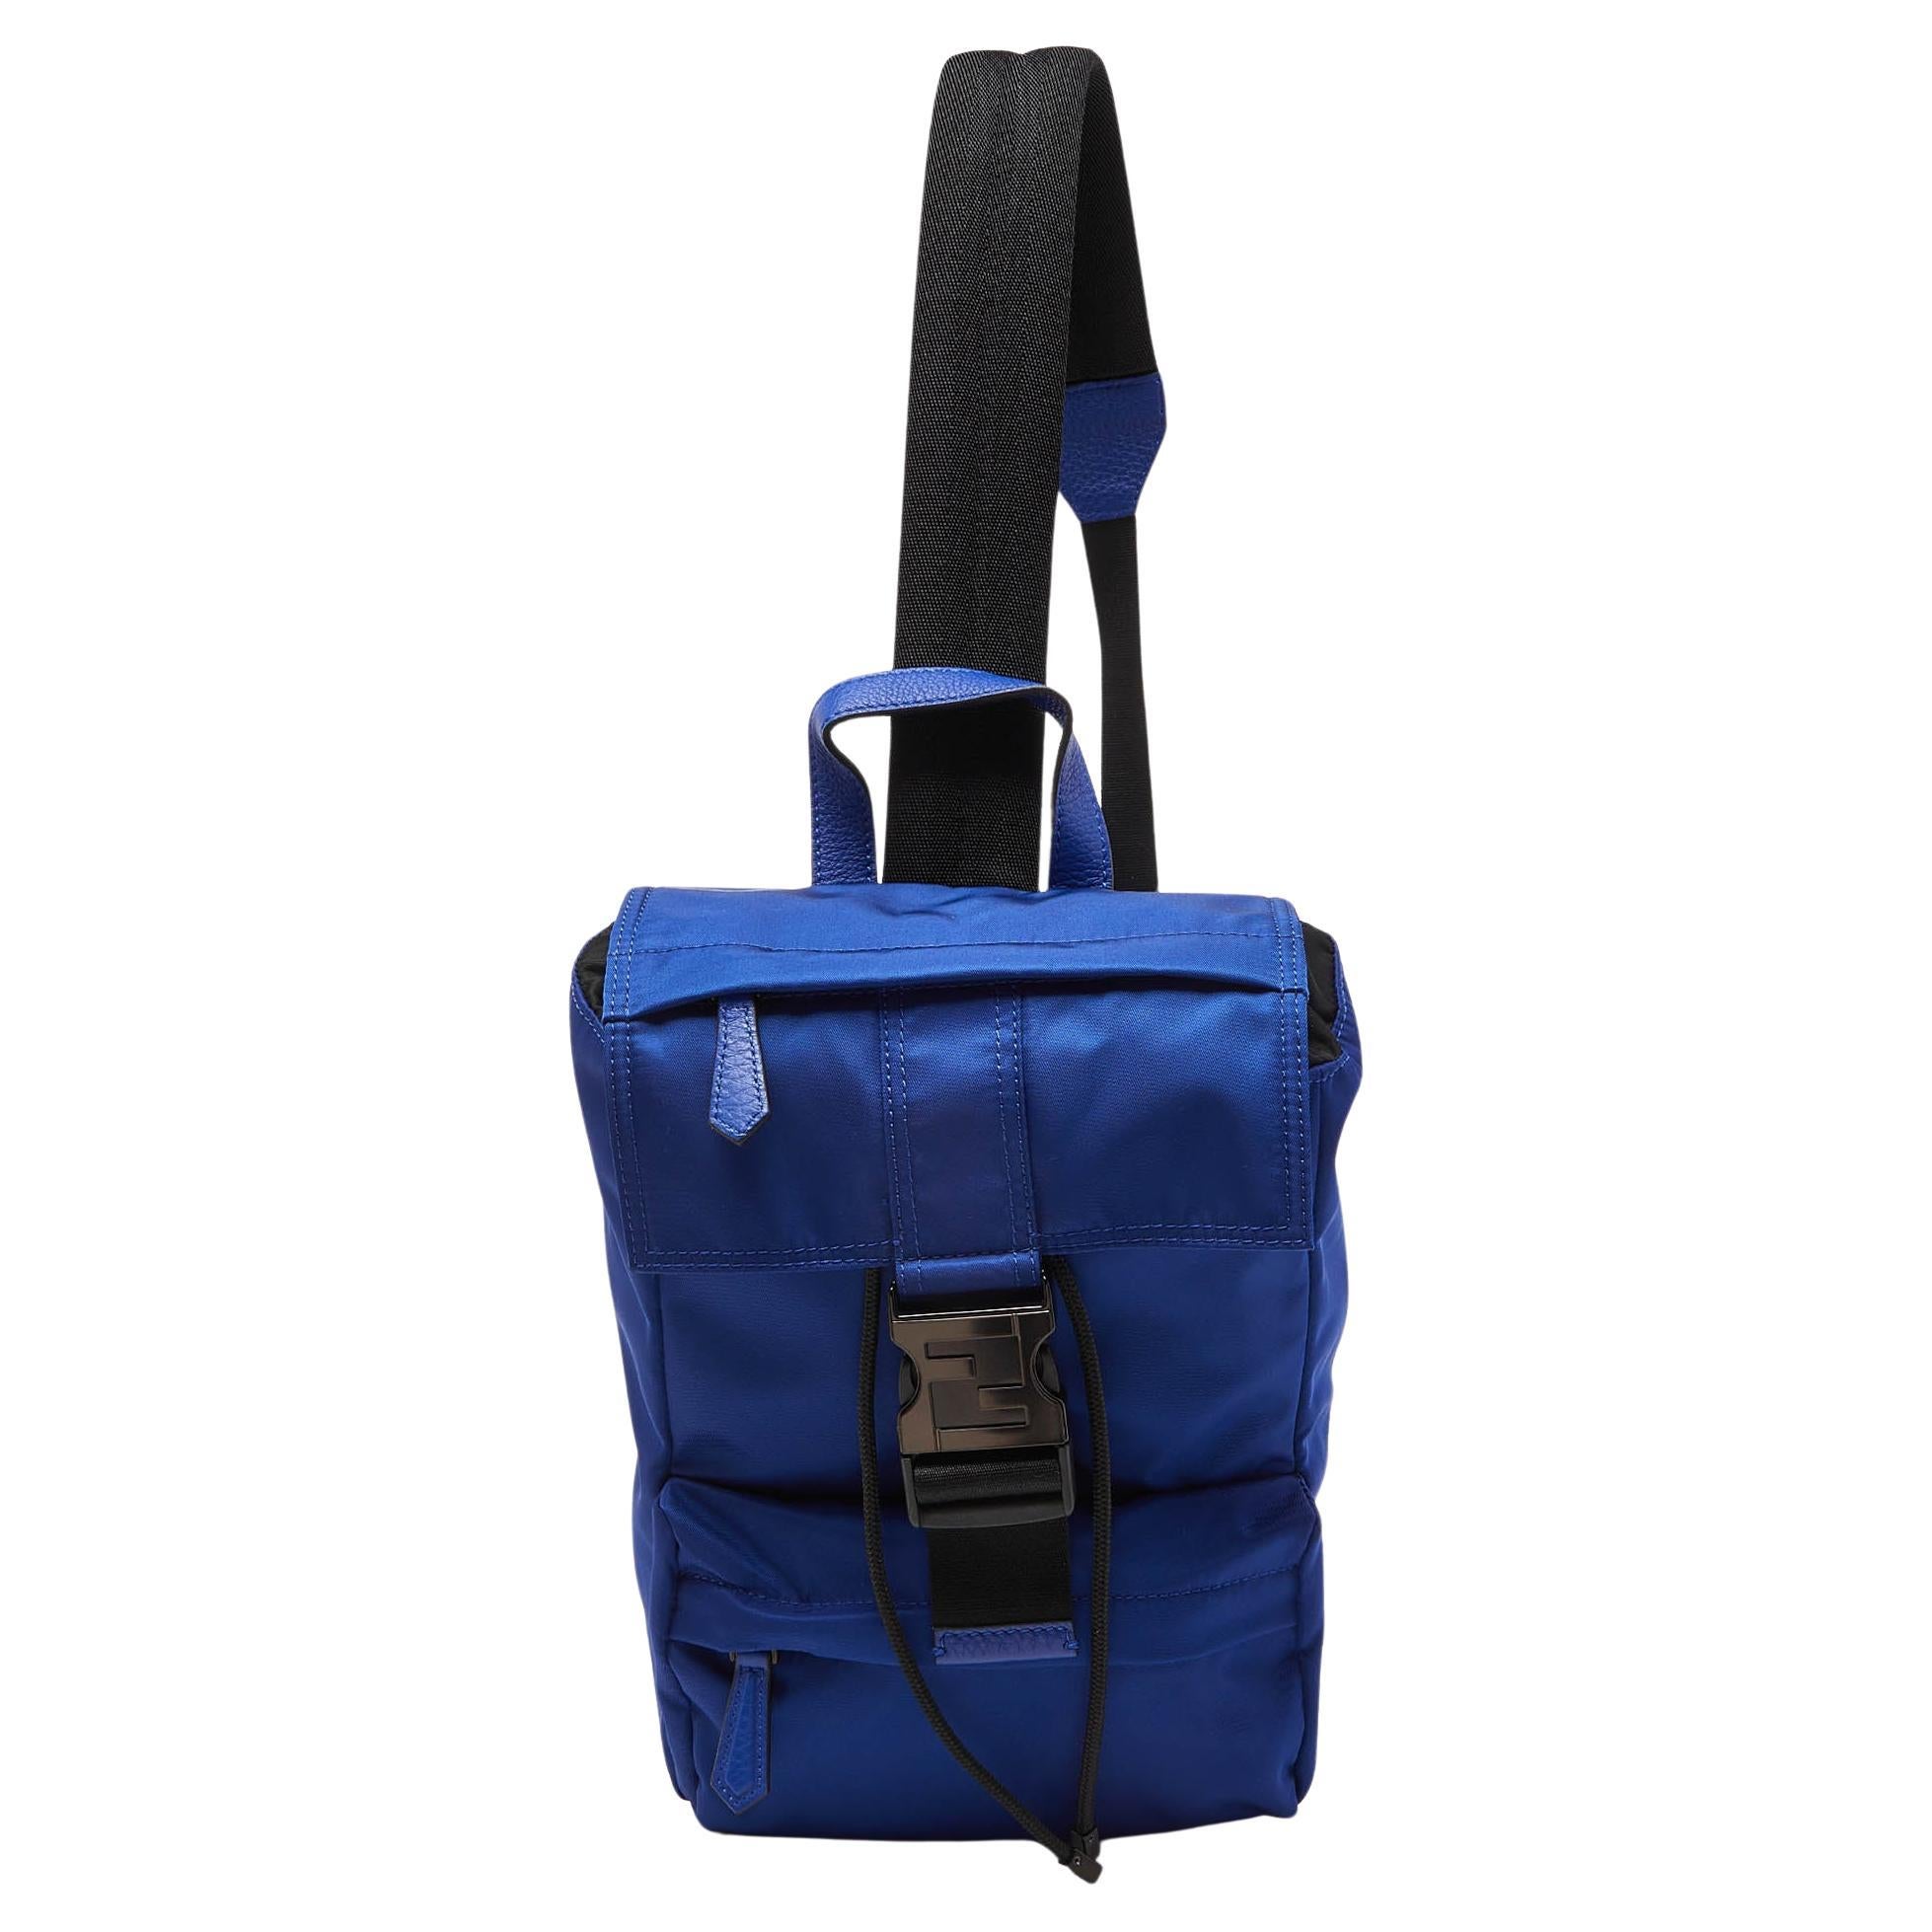 Fendi Blue/Black Nylon Small Fendiness Sling Backpack For Sale